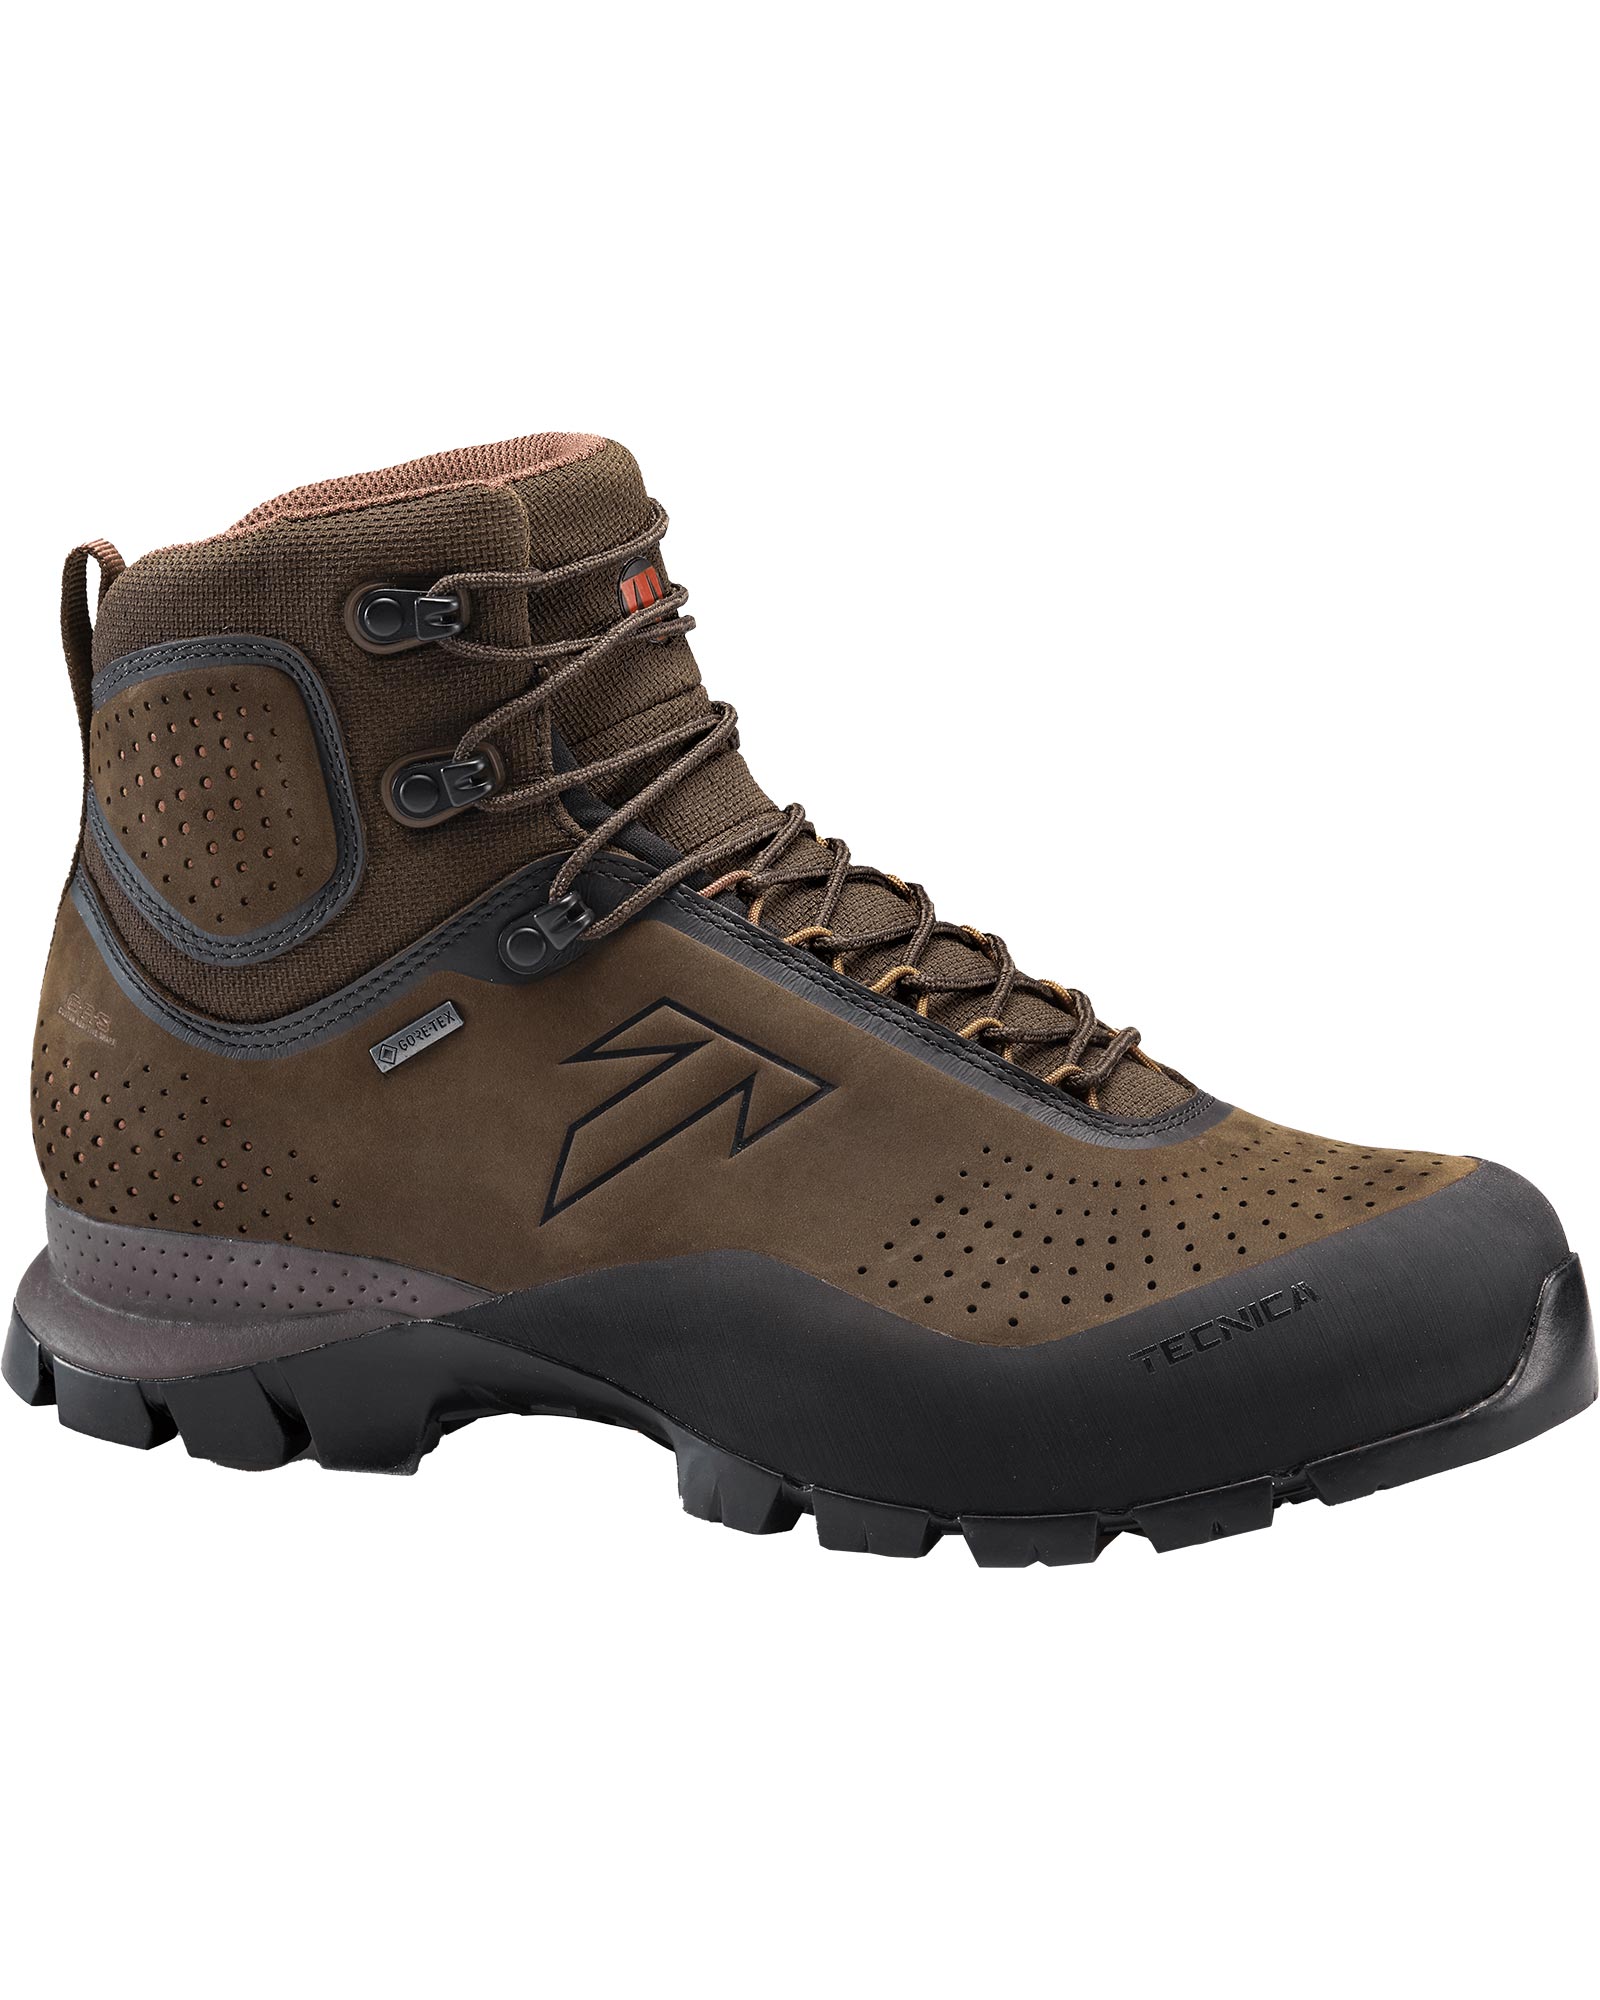 Tecnica Forge GORE TEX Men’s Boots - Night Tierra/Rich Laterite UK 8.5